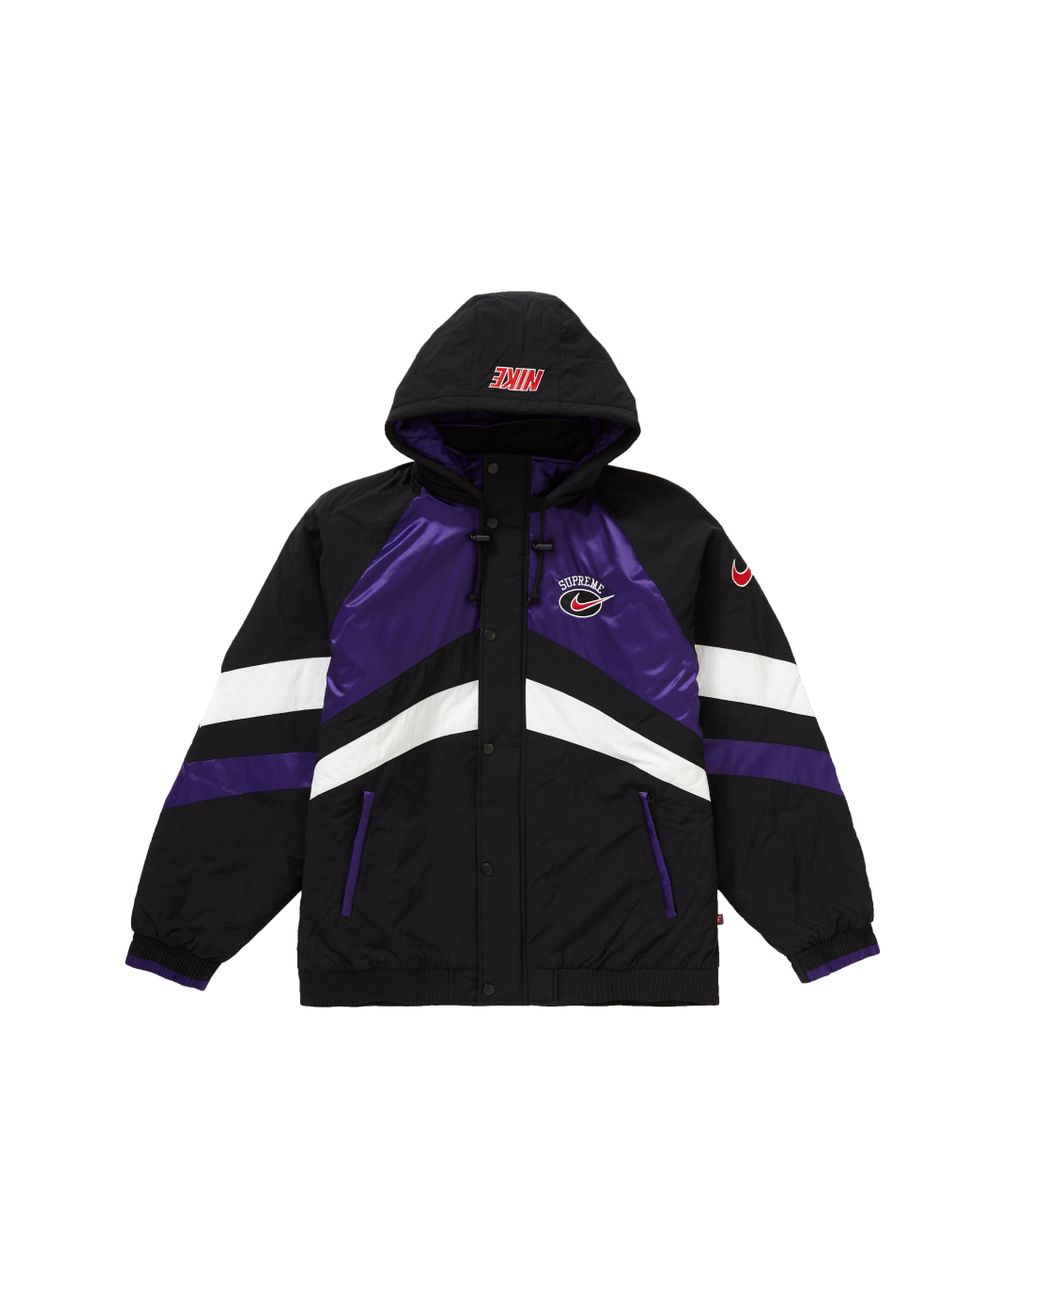 supreme nike purple jacket